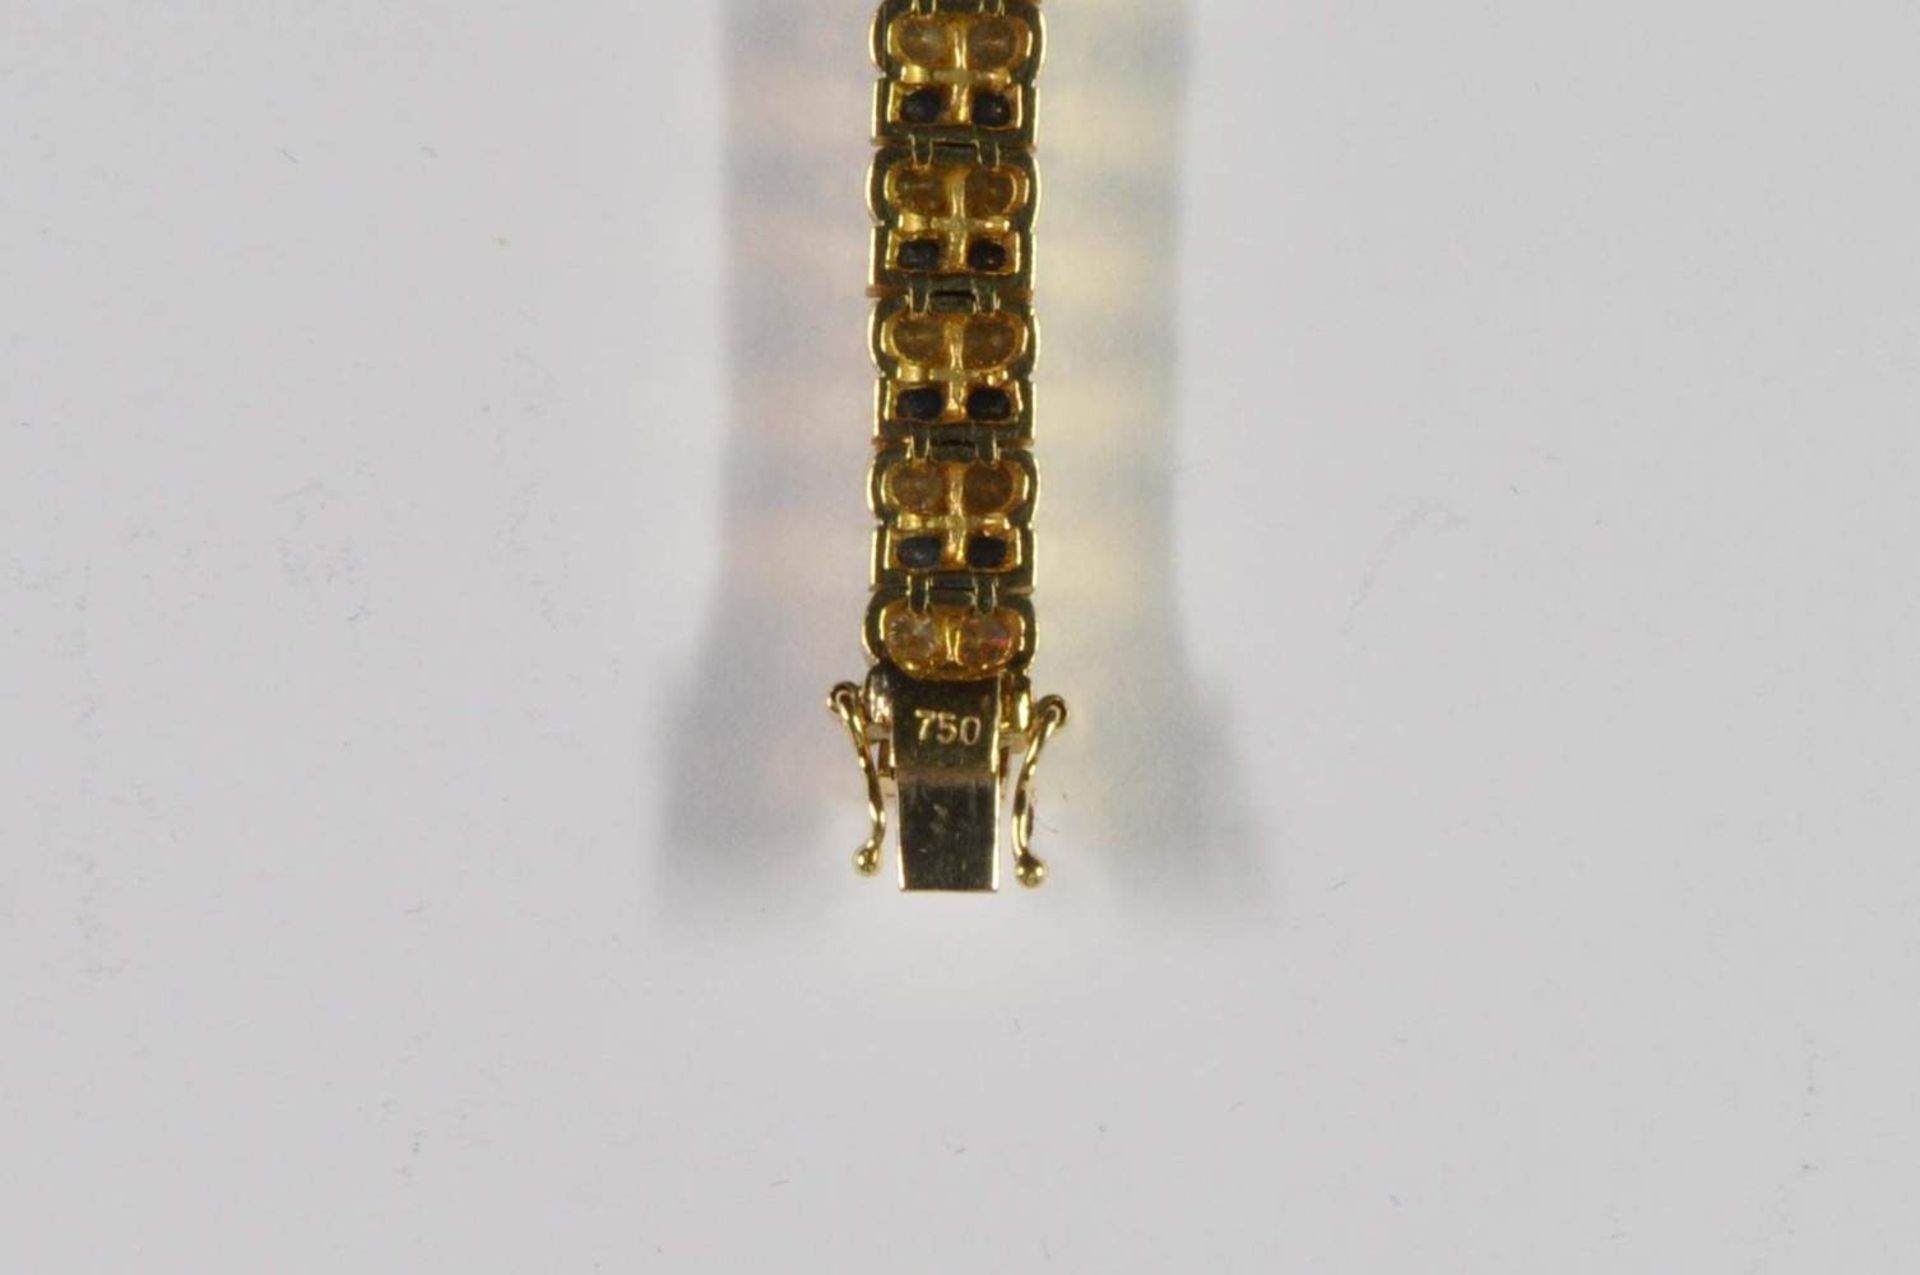 Saphir-Brillant-Armband, 750 Gelbgold, Punze, 66 Brillanten von zus. ca. 3,2ct, 64 Saphiren von zus. - Bild 12 aus 20